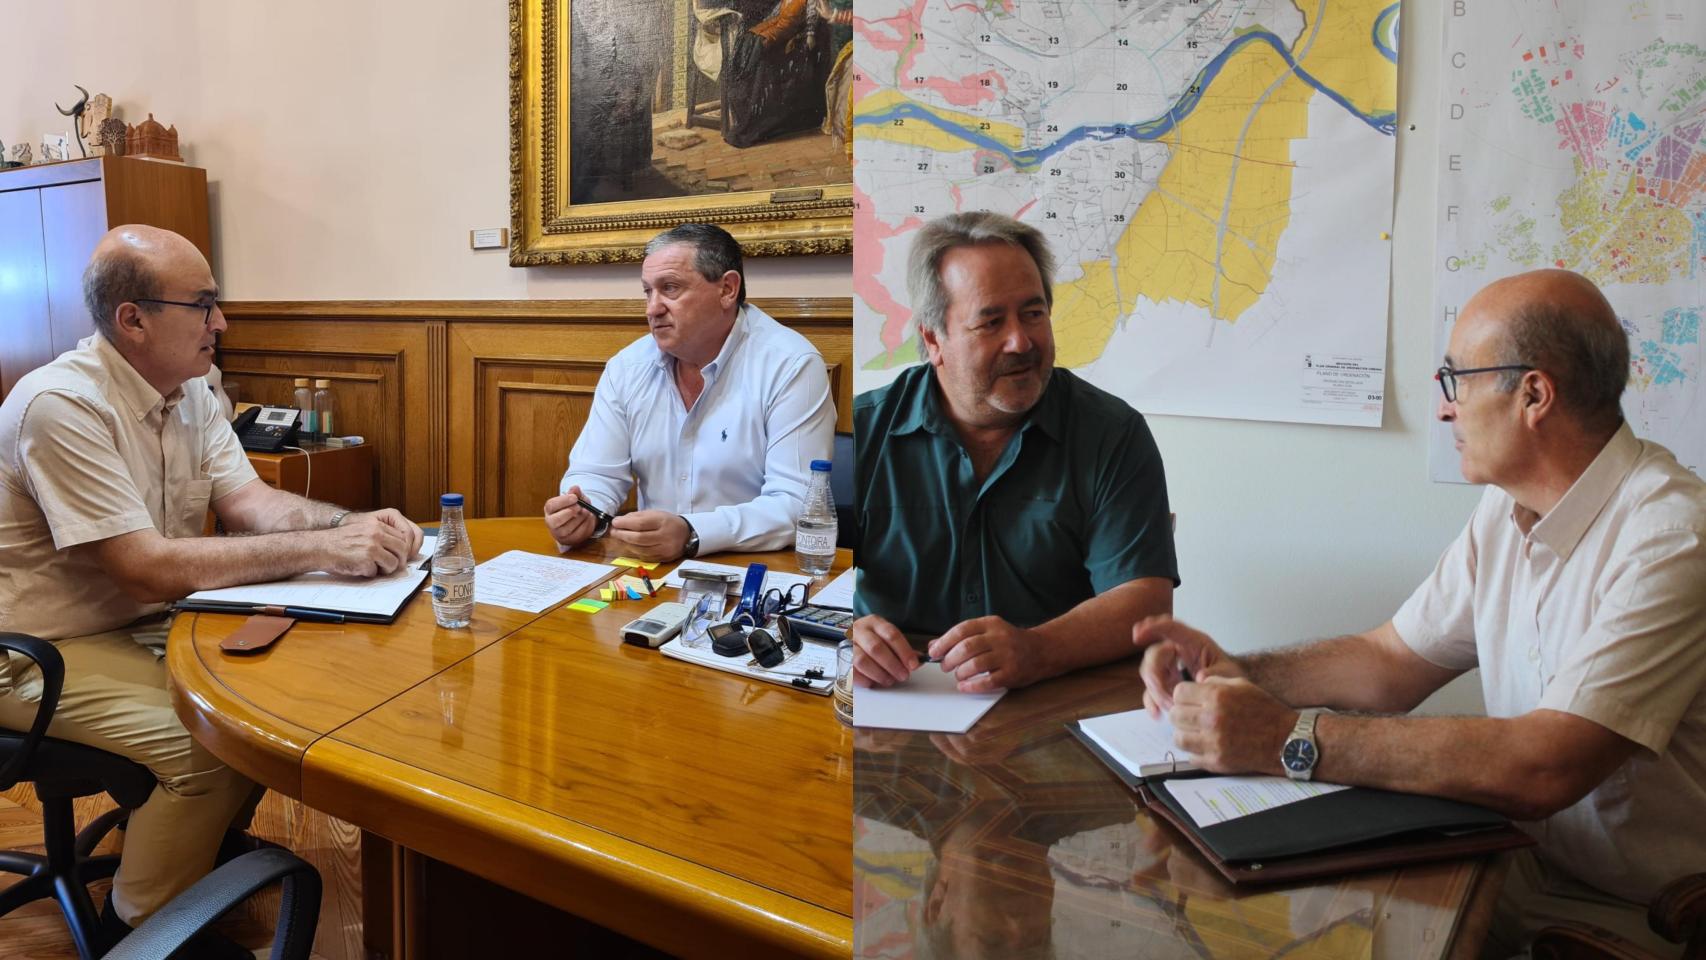 Collage de Fernando Prada con su visita al Ayuntamiento y la Diputación de Zamora